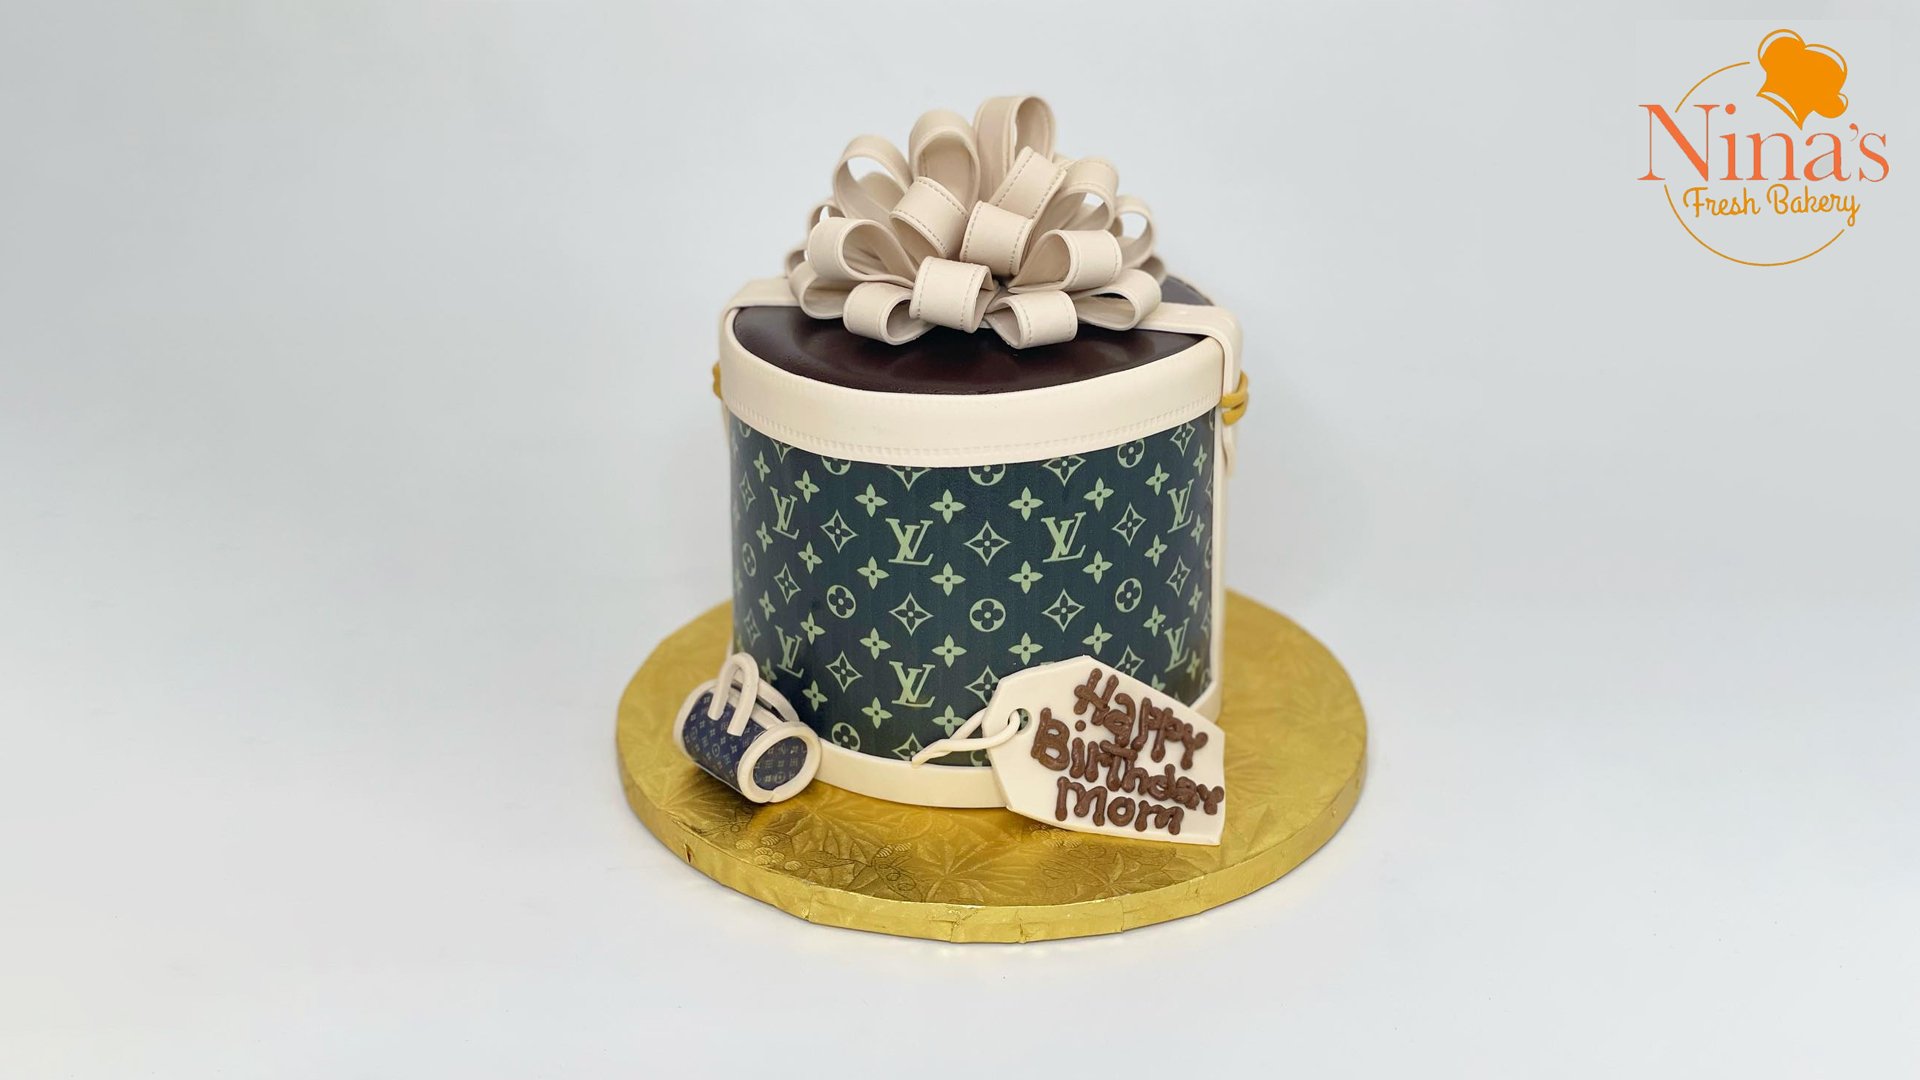 Birthday cake from Ninas bakery